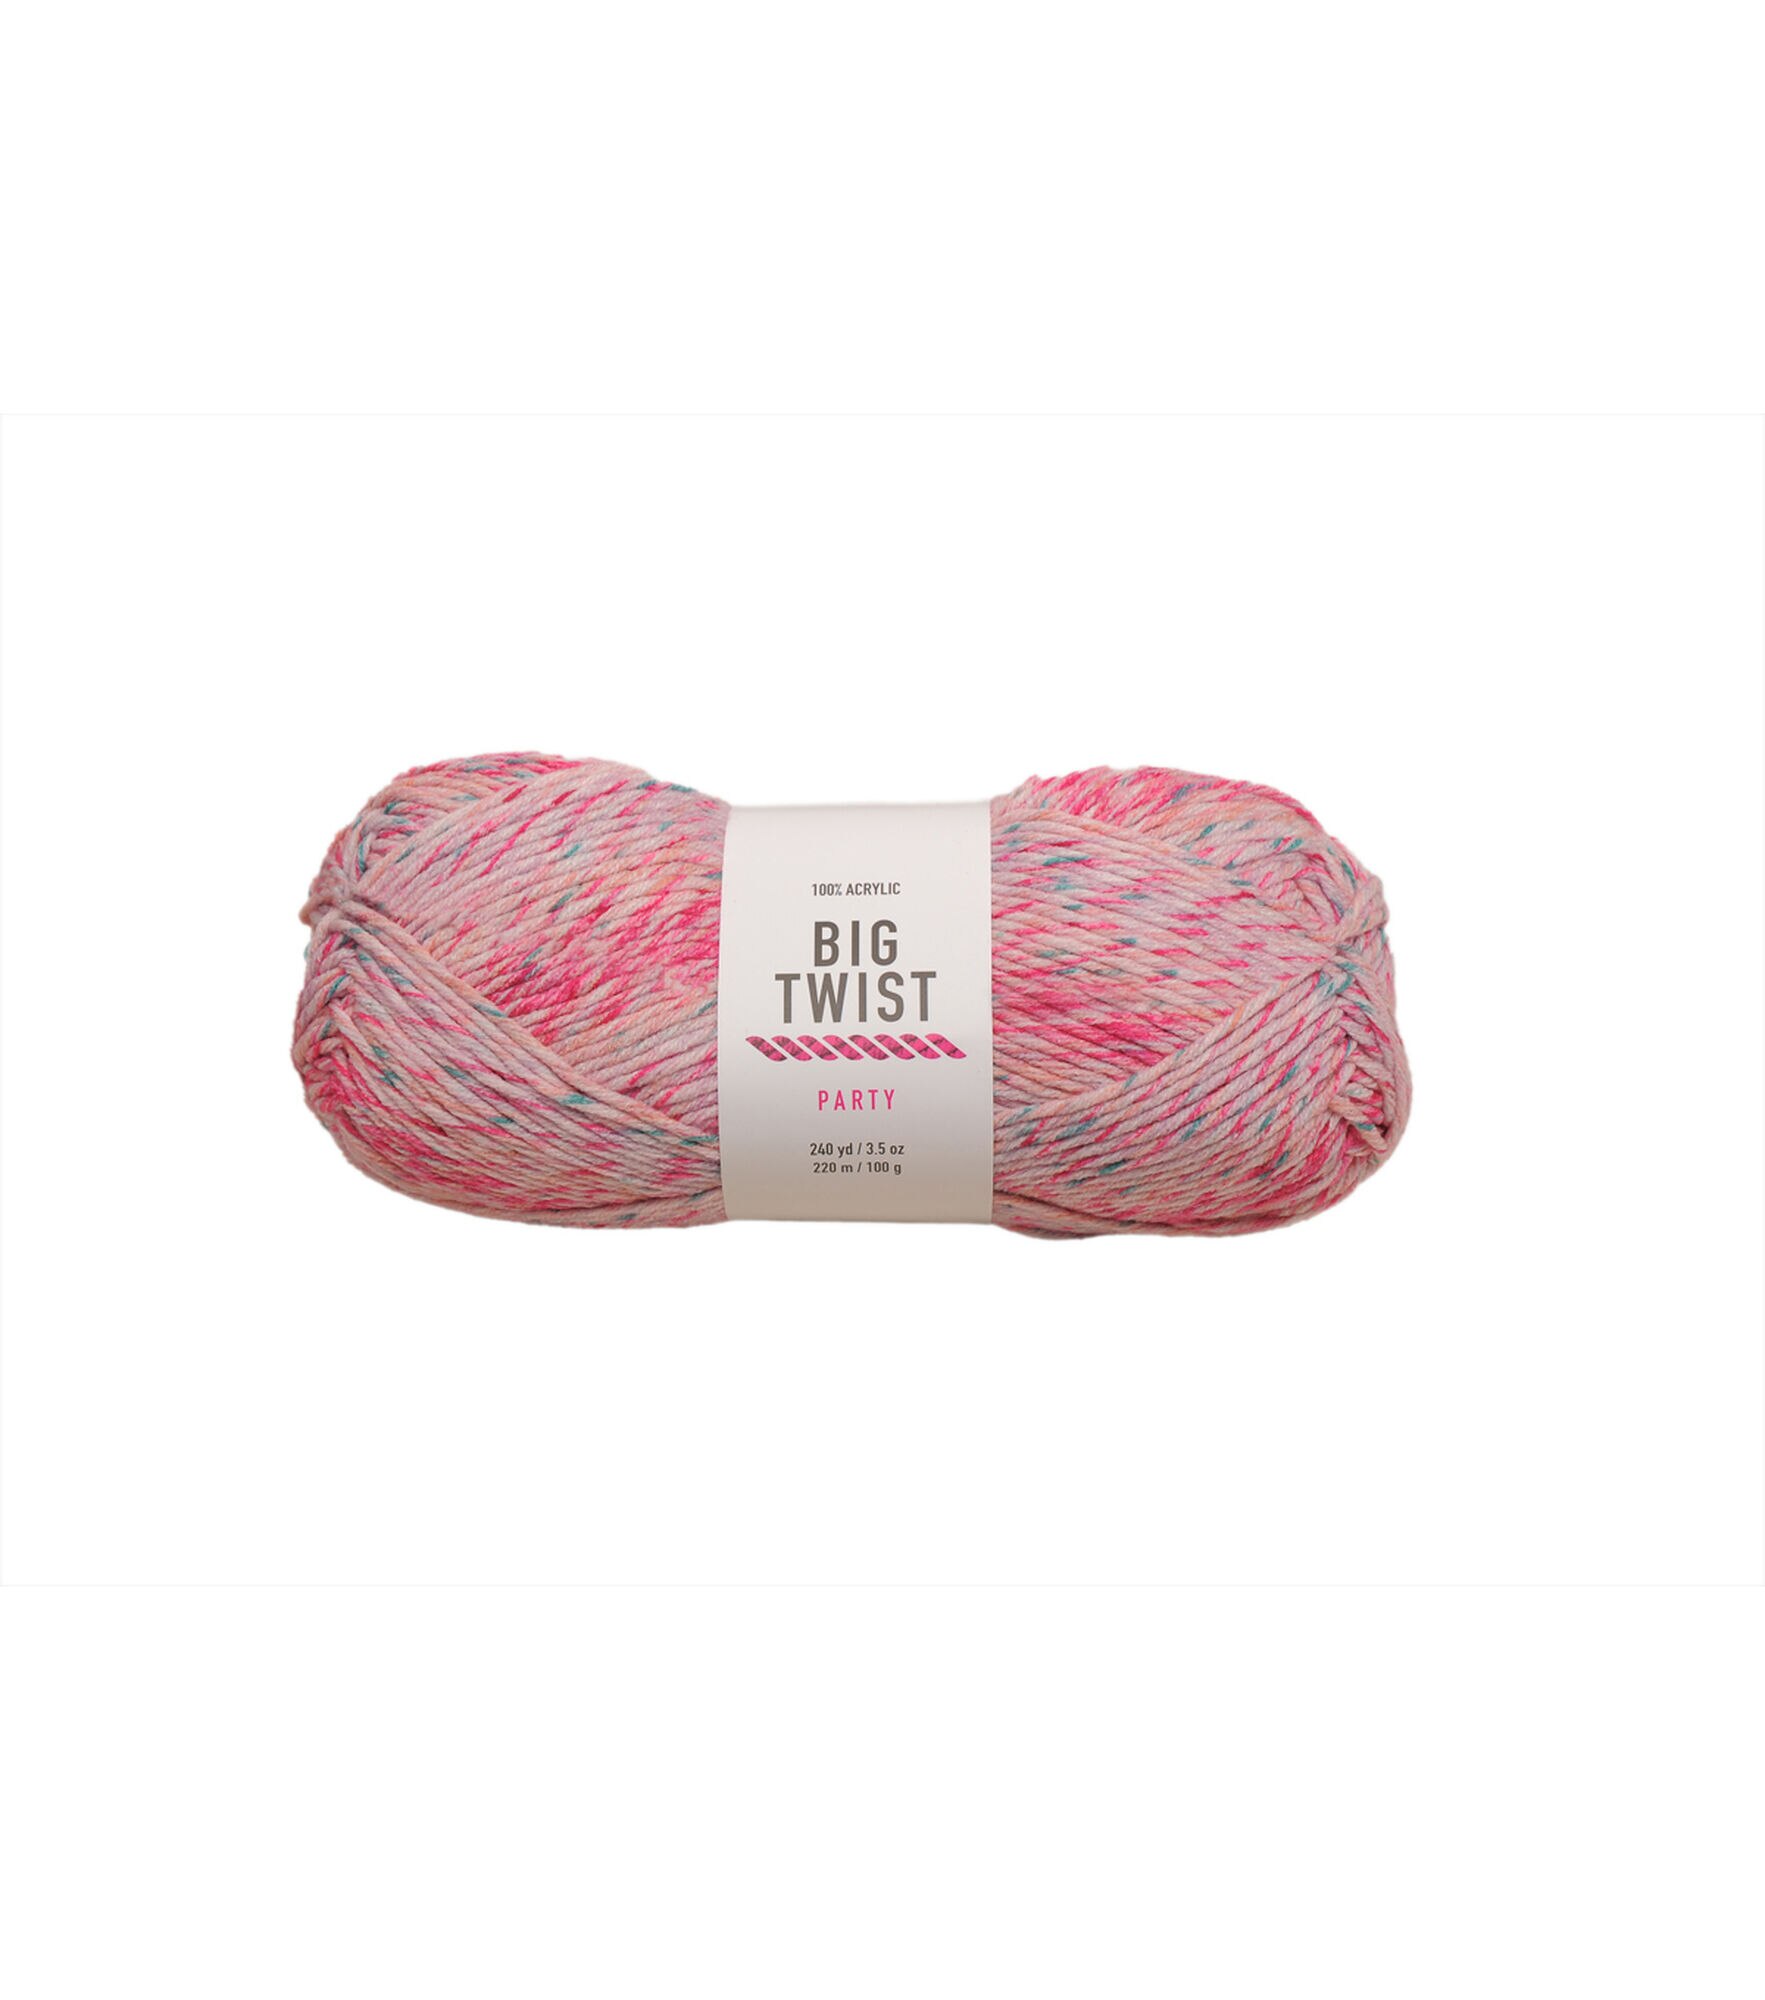 Chunky Knit – Jelly Fabrics Ltd